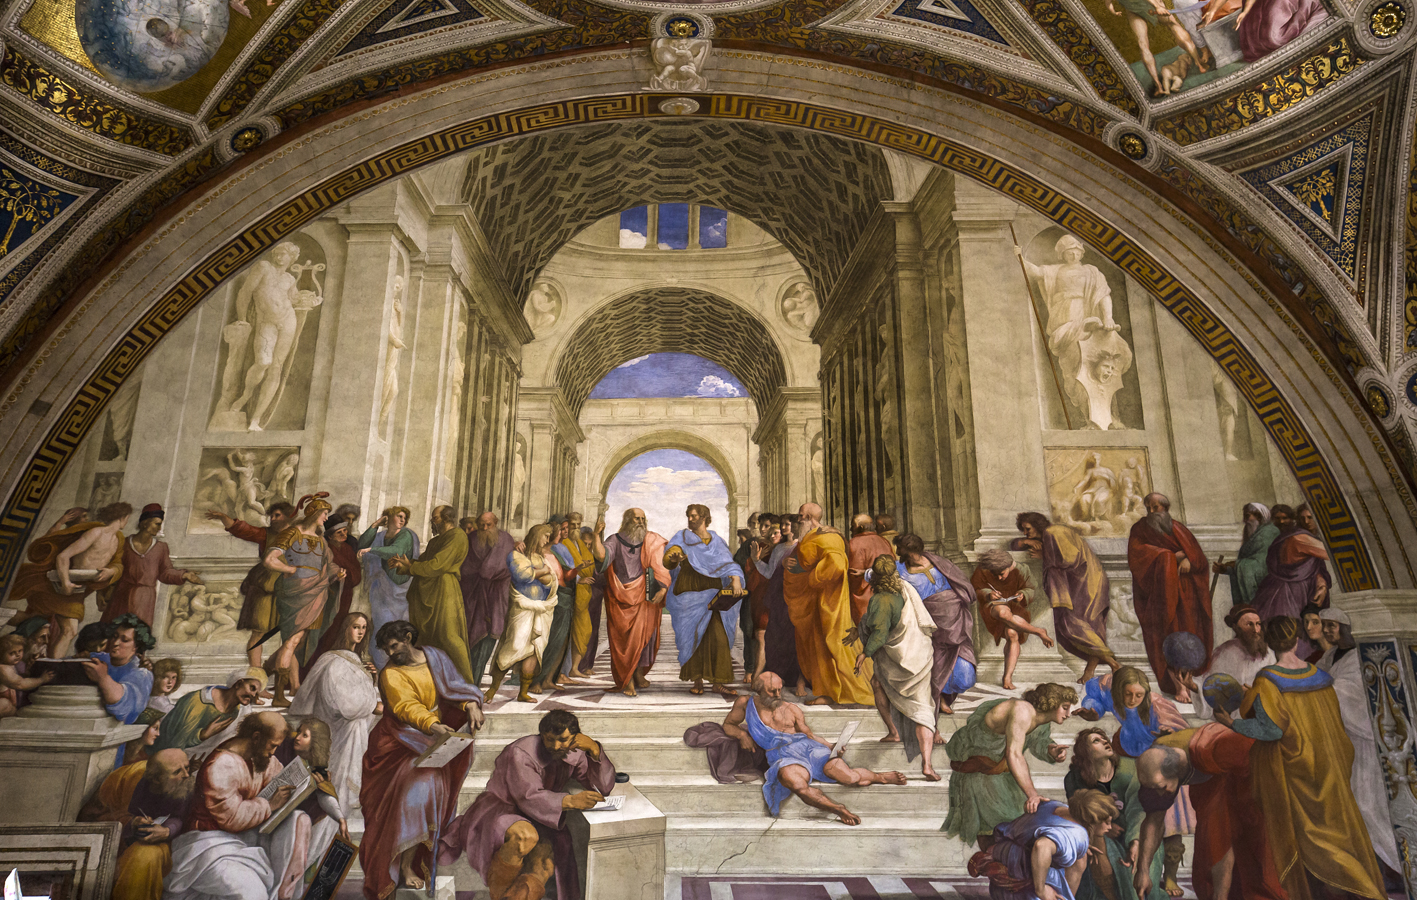 vVtikánské sbírky - Raffaelo, freska Athénská škola na stěně sálu Podpisu